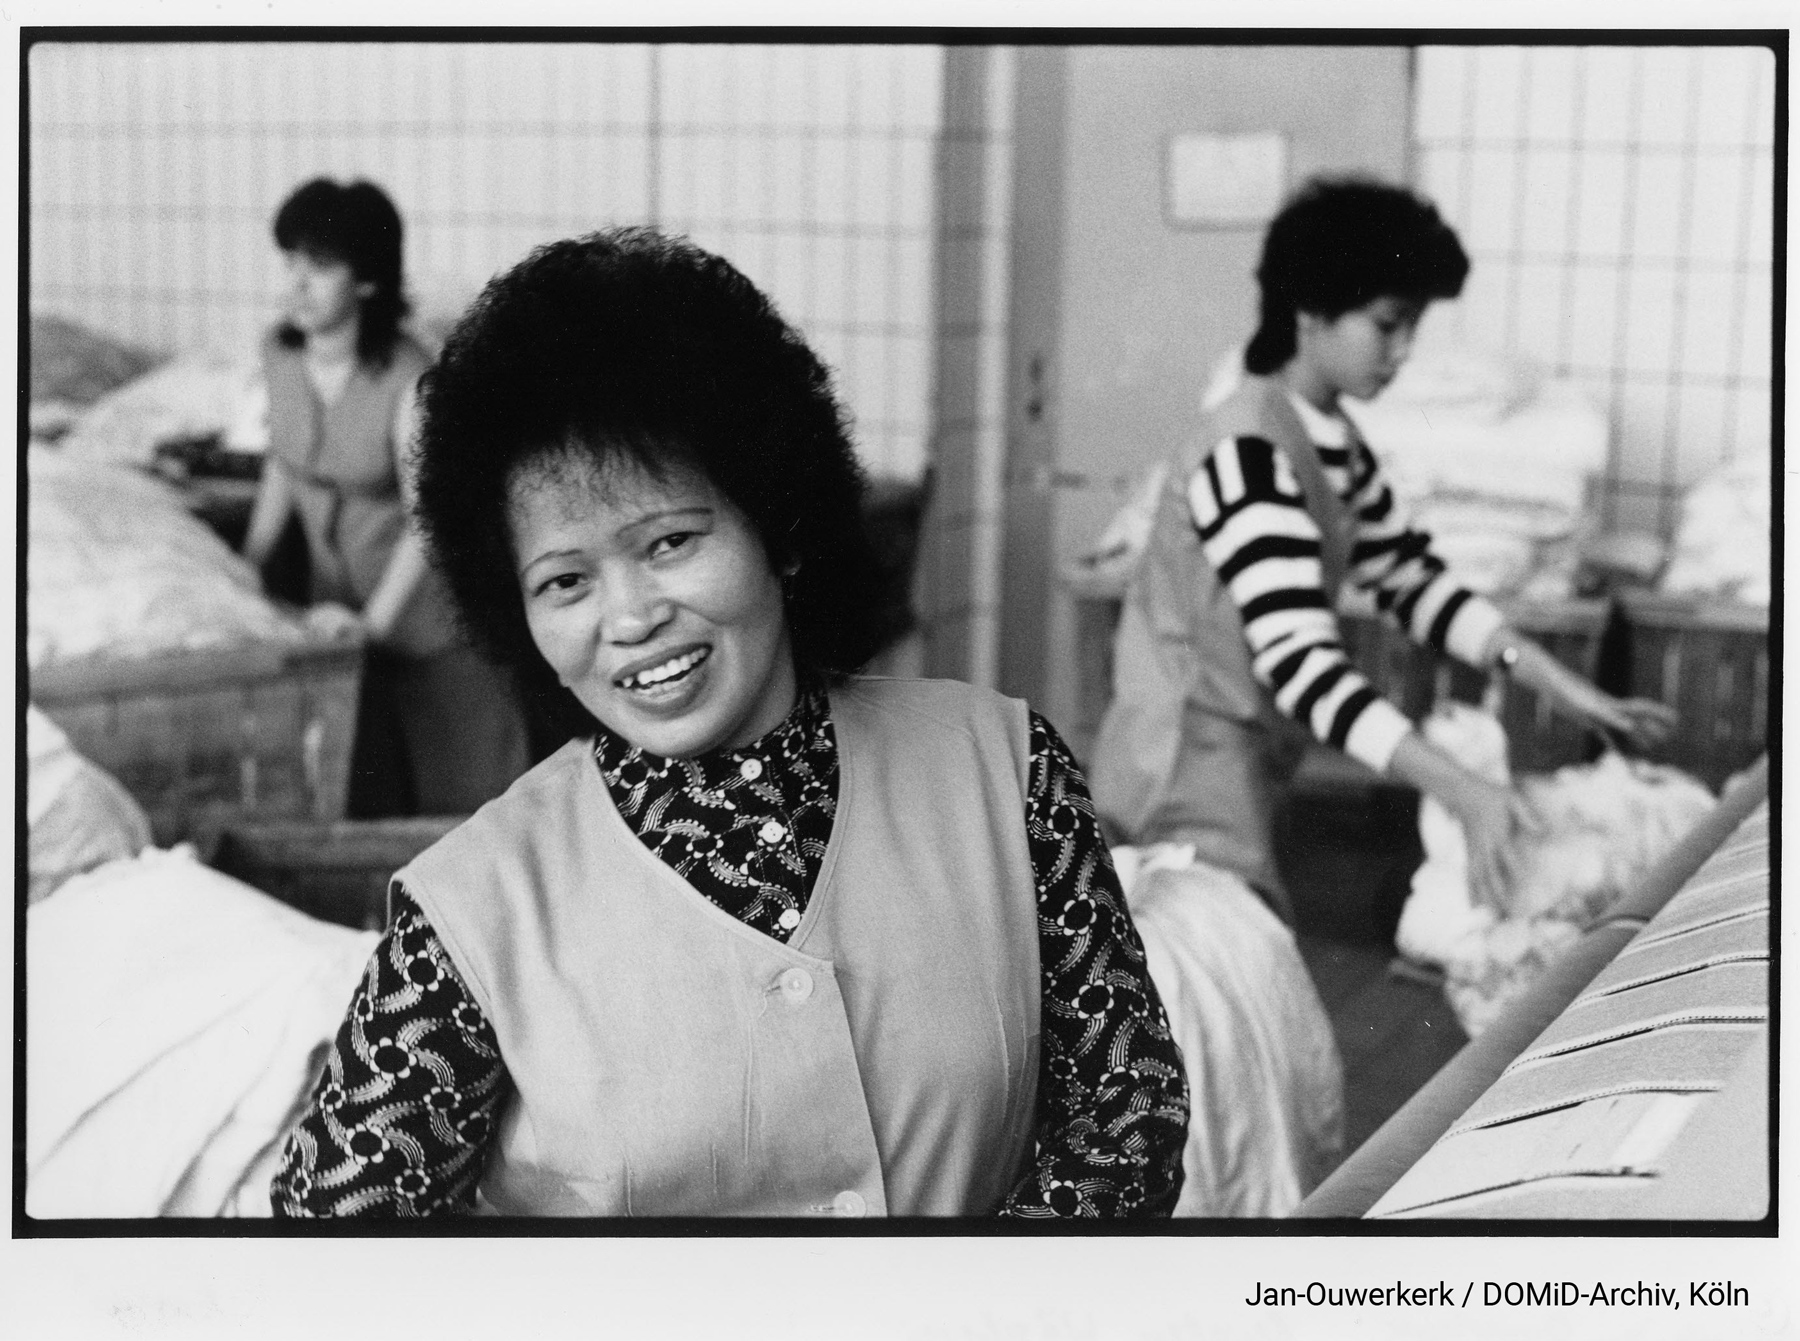 Die Rewatex Wäscherei in Berlin-Pankow, Dezember 1990. Das Wäschereikombinat Rewatex beschäftigte vor der Wende einige Hundert vietnamesische Arbeitsmigrant*innen. Foto: Erik-Jan Ouwerkerk/DOMiD-Archiv, Köln, E 0111,0060